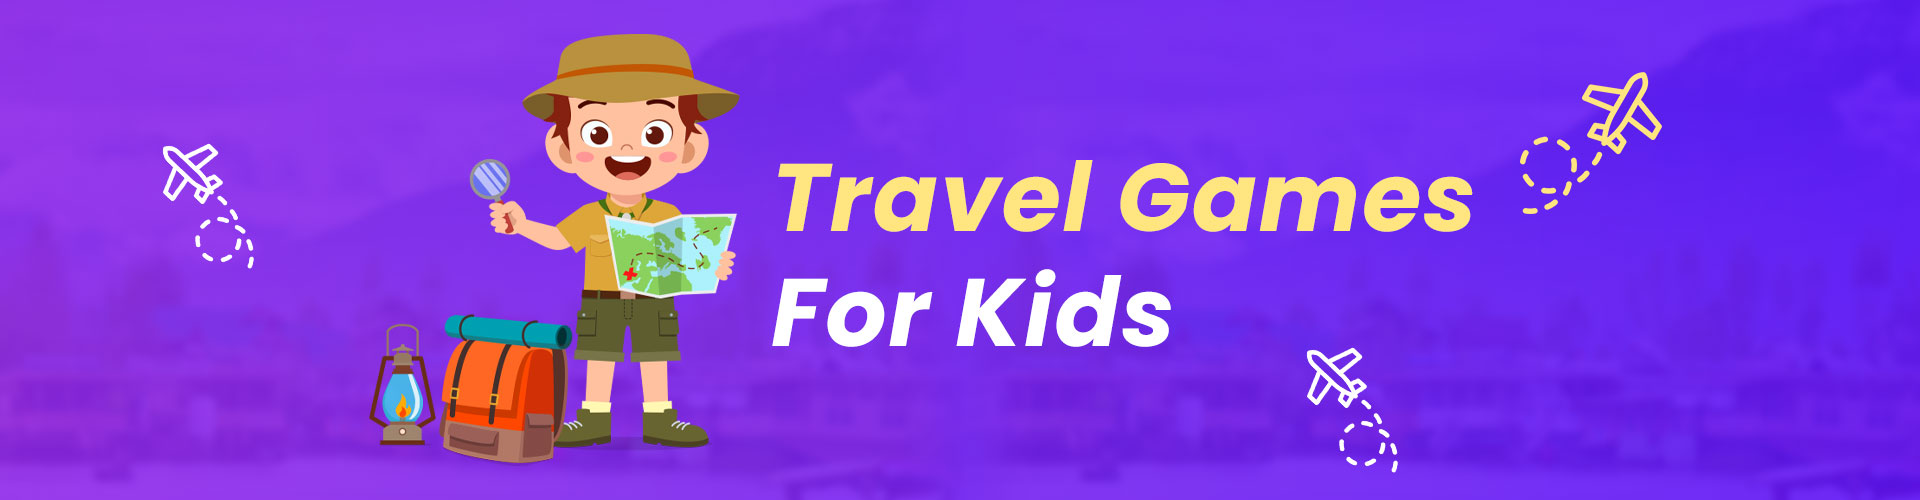 Entertaining Travel Games For Kids: Making Journeys Memorable